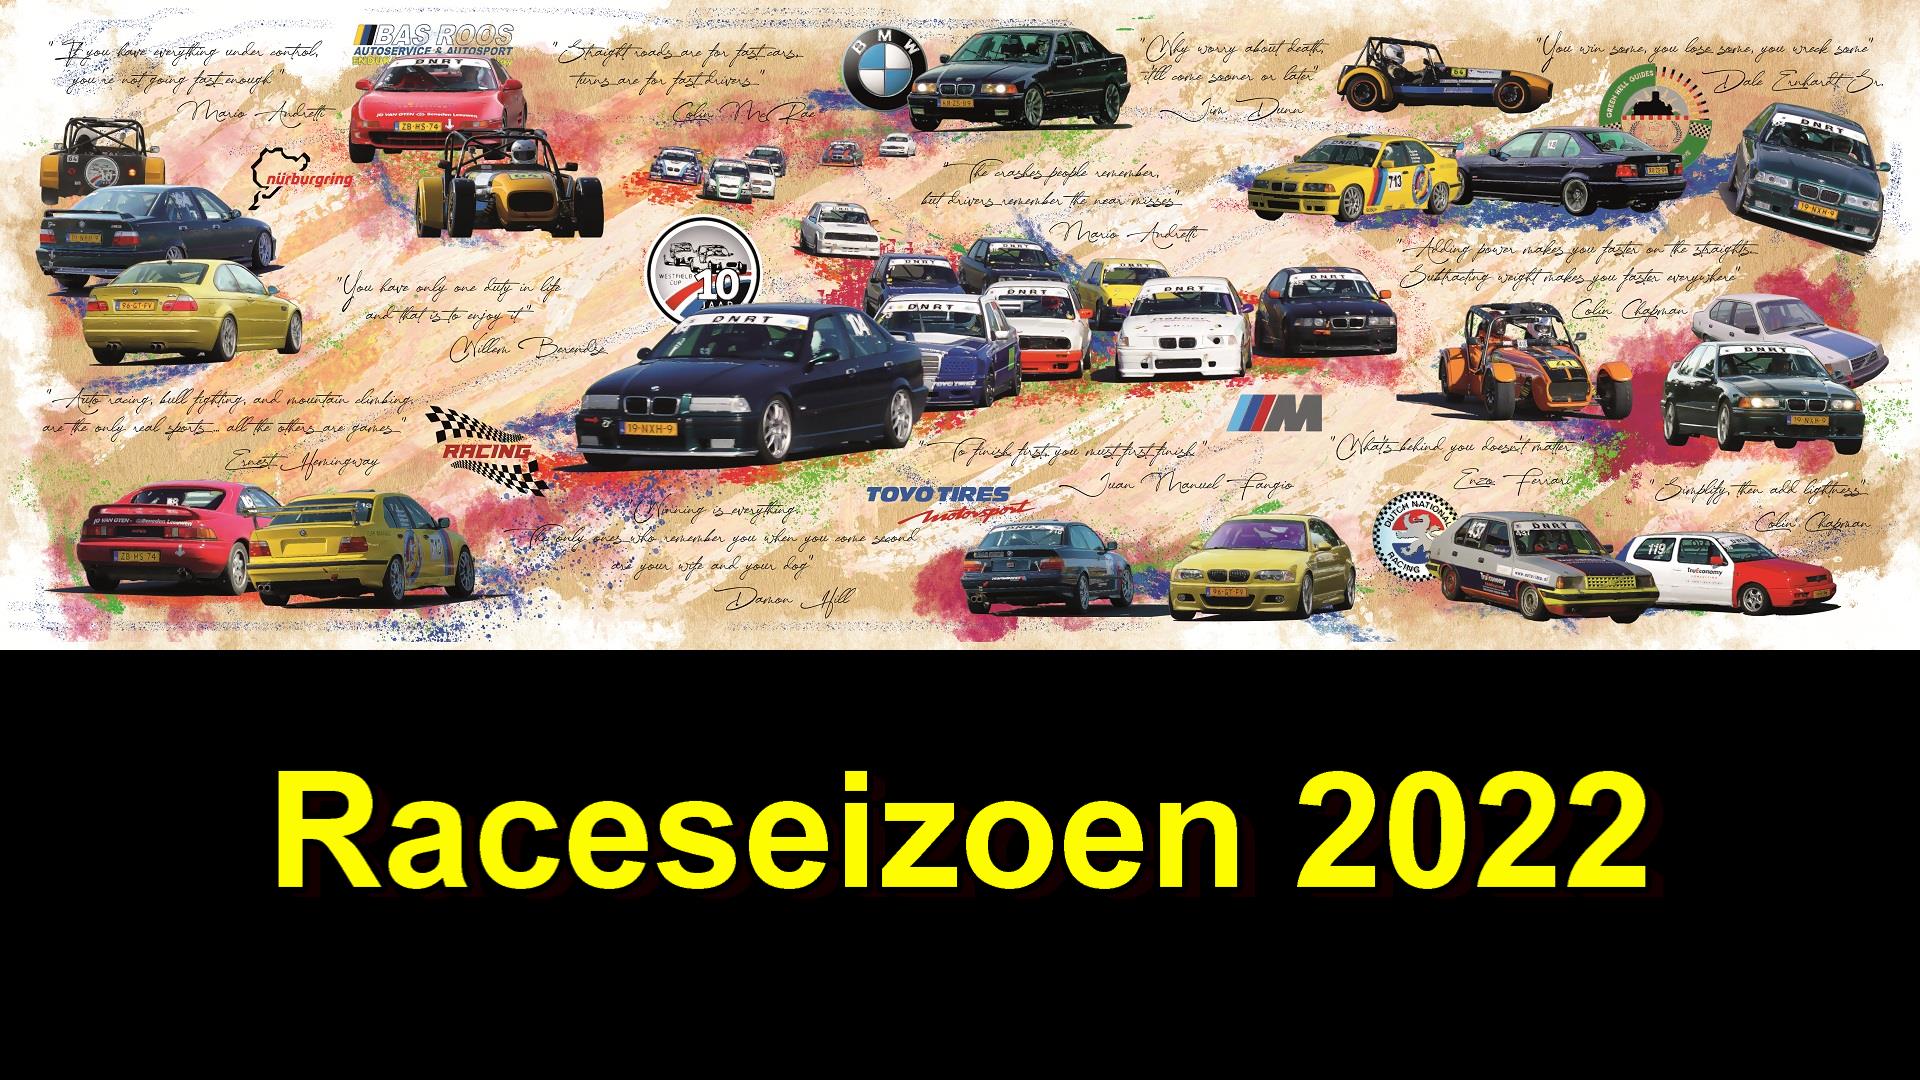 Raceseizoen 2022